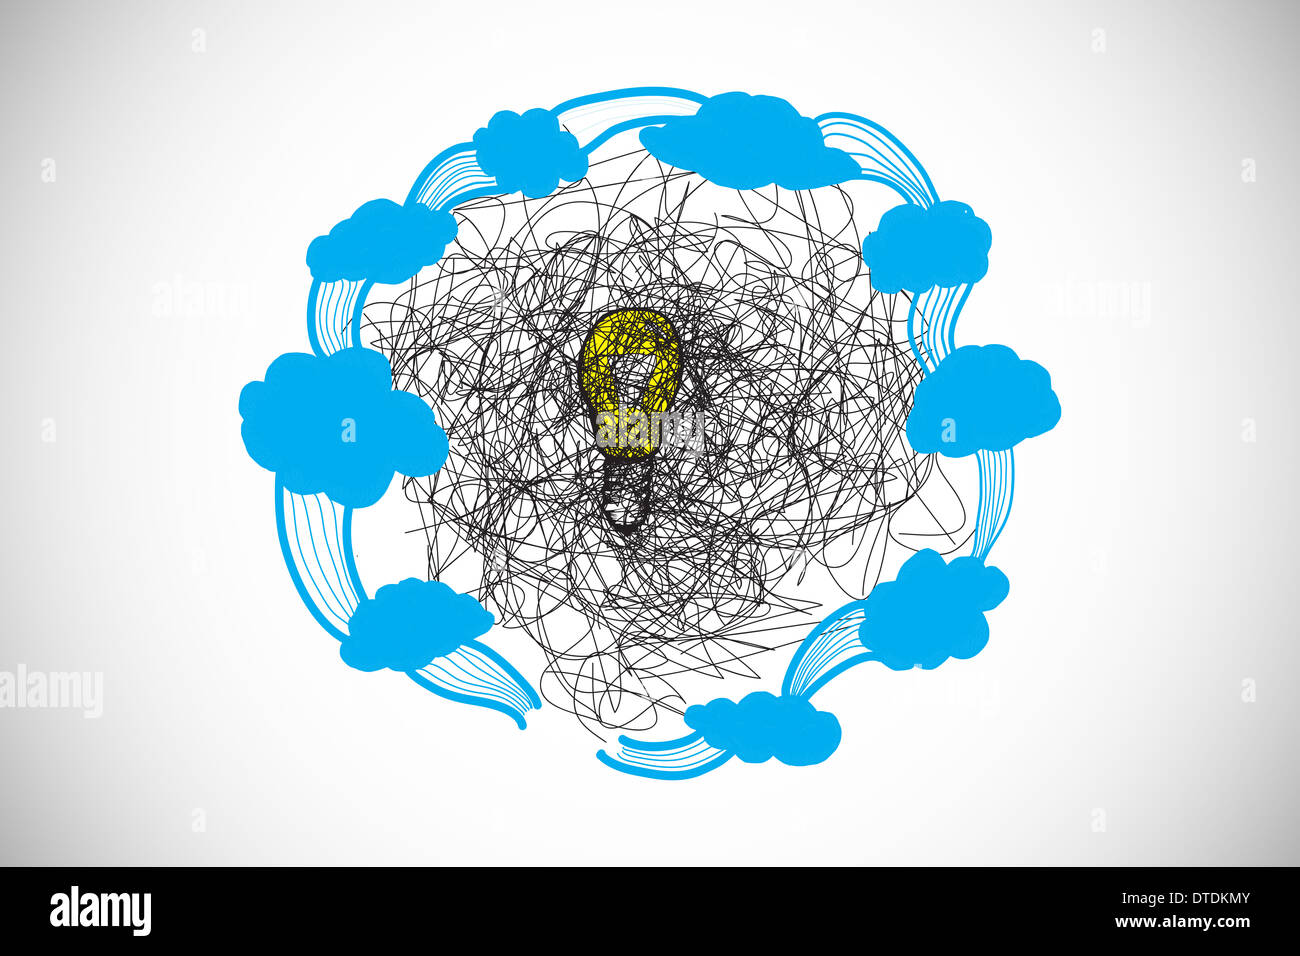 Immagine composita di scribble sulla lampadina con nuvole doodle Foto Stock